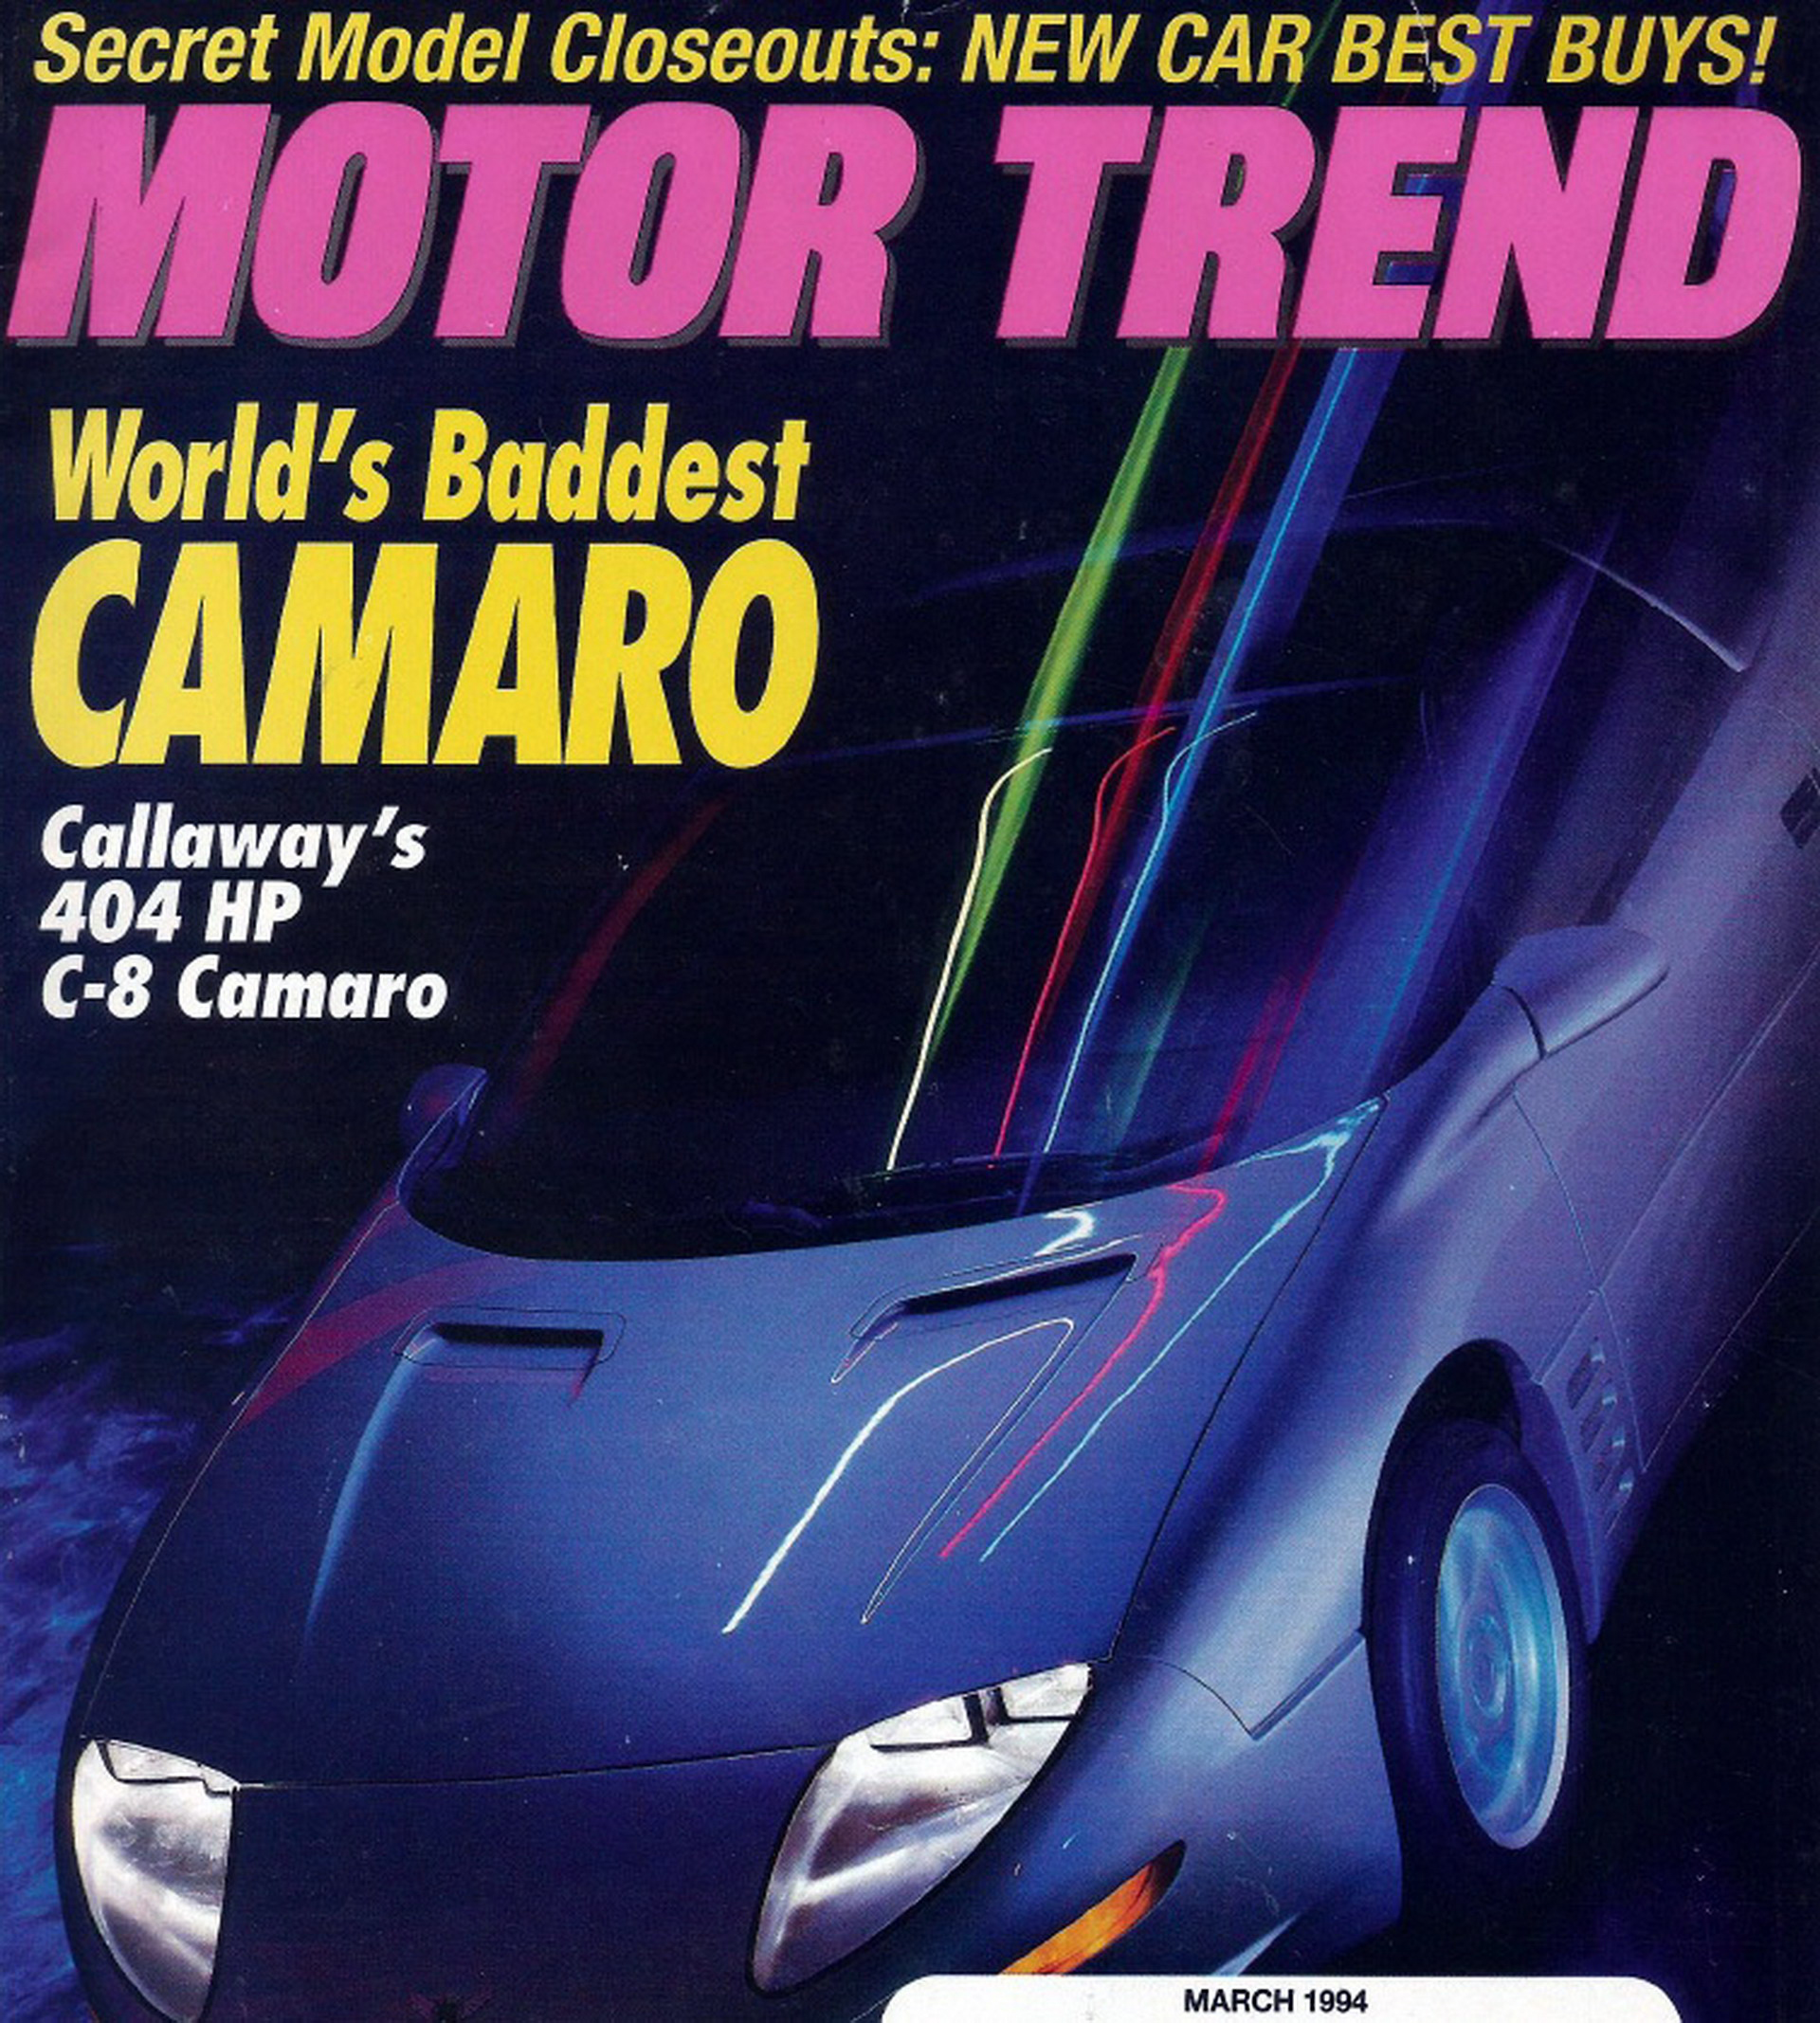 Forside fra Motor Trend og World's baddest Camaro